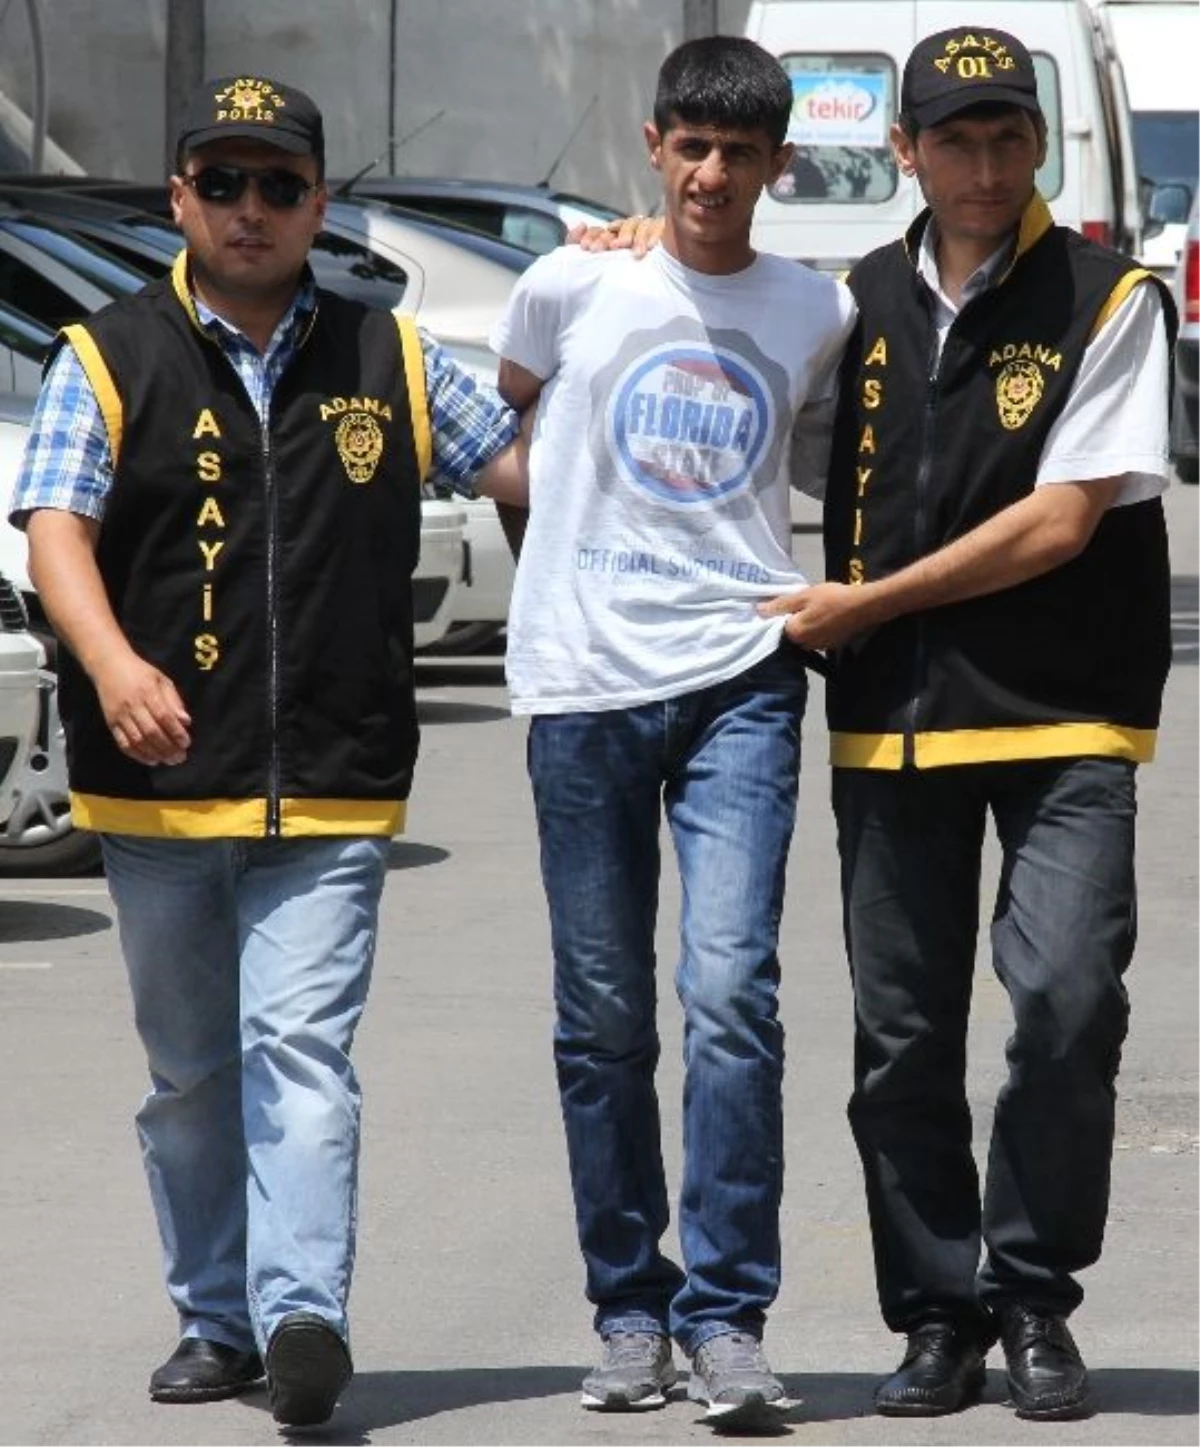 Adana Polisi, 6 Ayda Aranan 690 Kişiyi Yakaladı